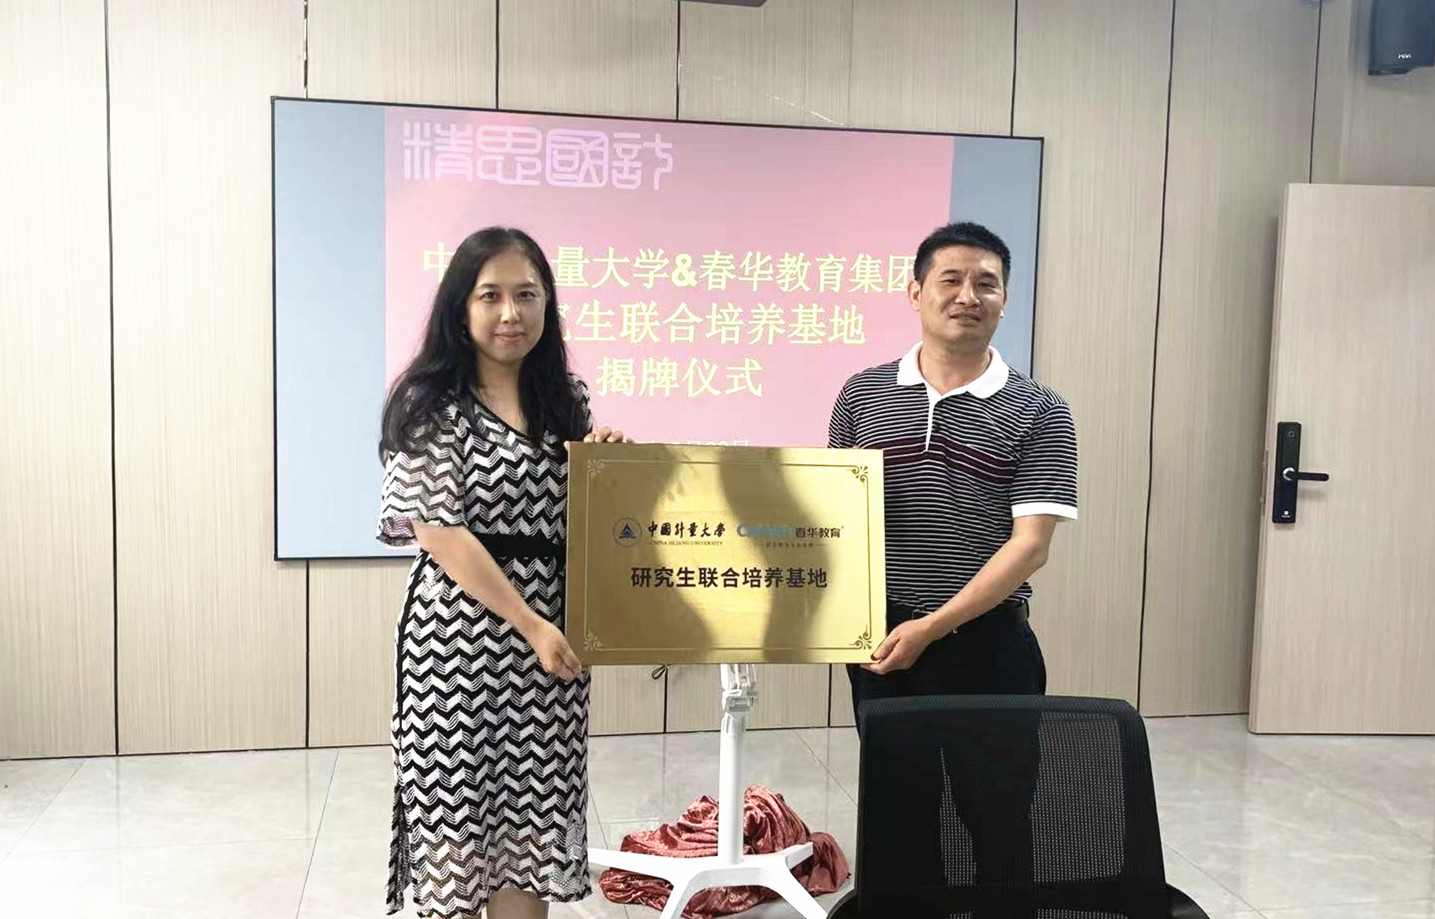 热烈祝贺春华教育集团与中国计量大学达成战略合作，共建研究生联合培养基地